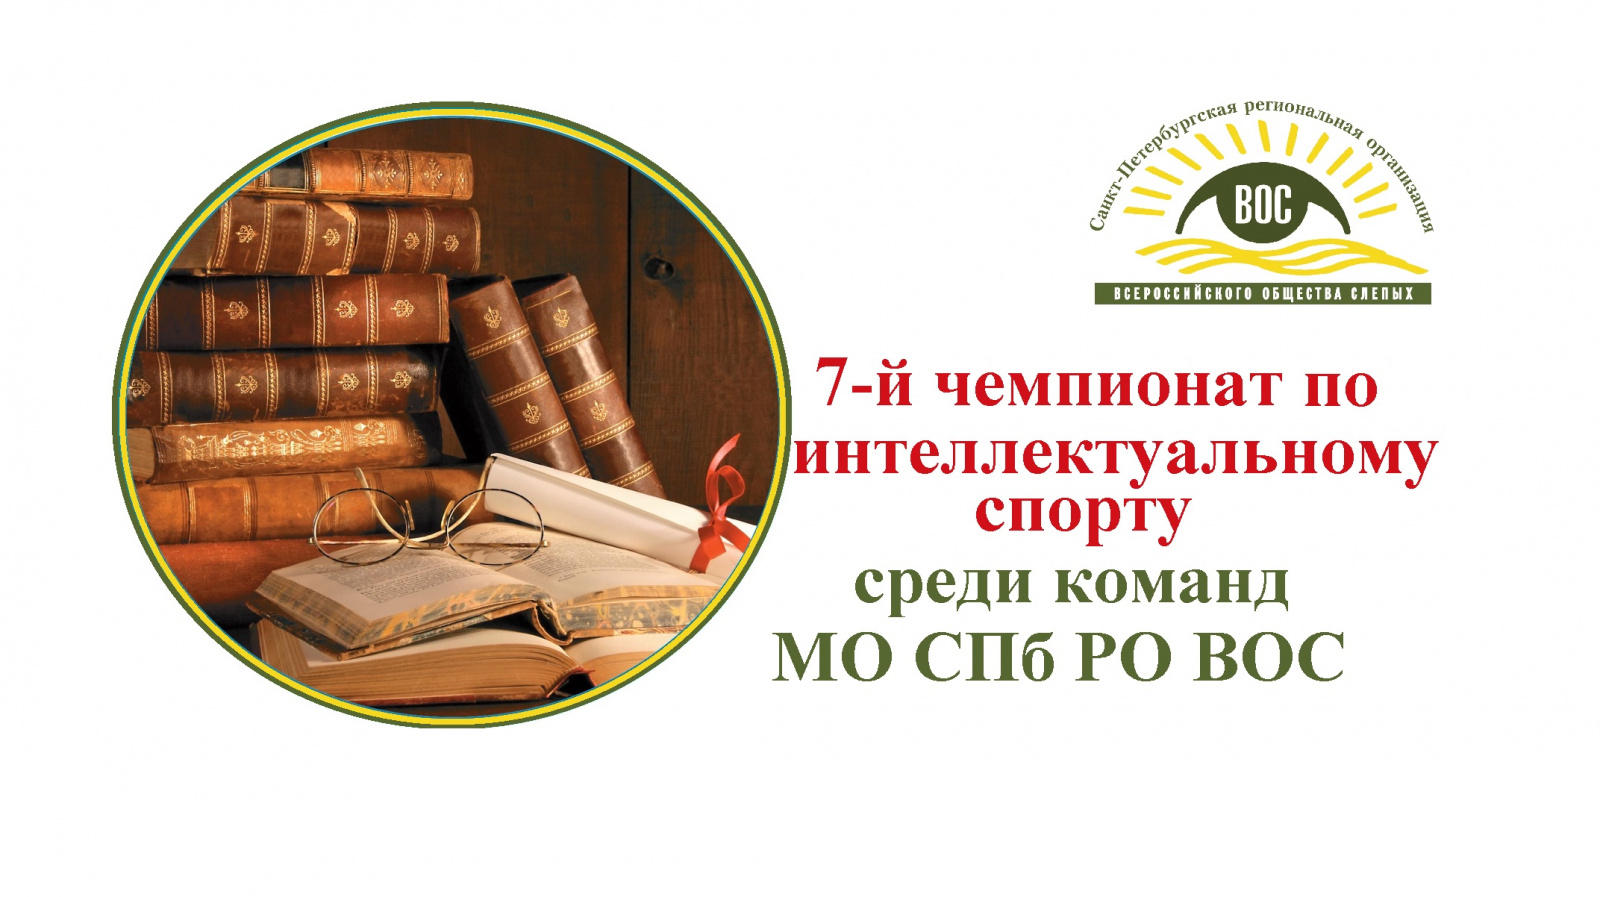 30 марта состоится 7-й Чемпионат по интеллектуальному спорту среди команд местных организаций СПб РО ВОС 